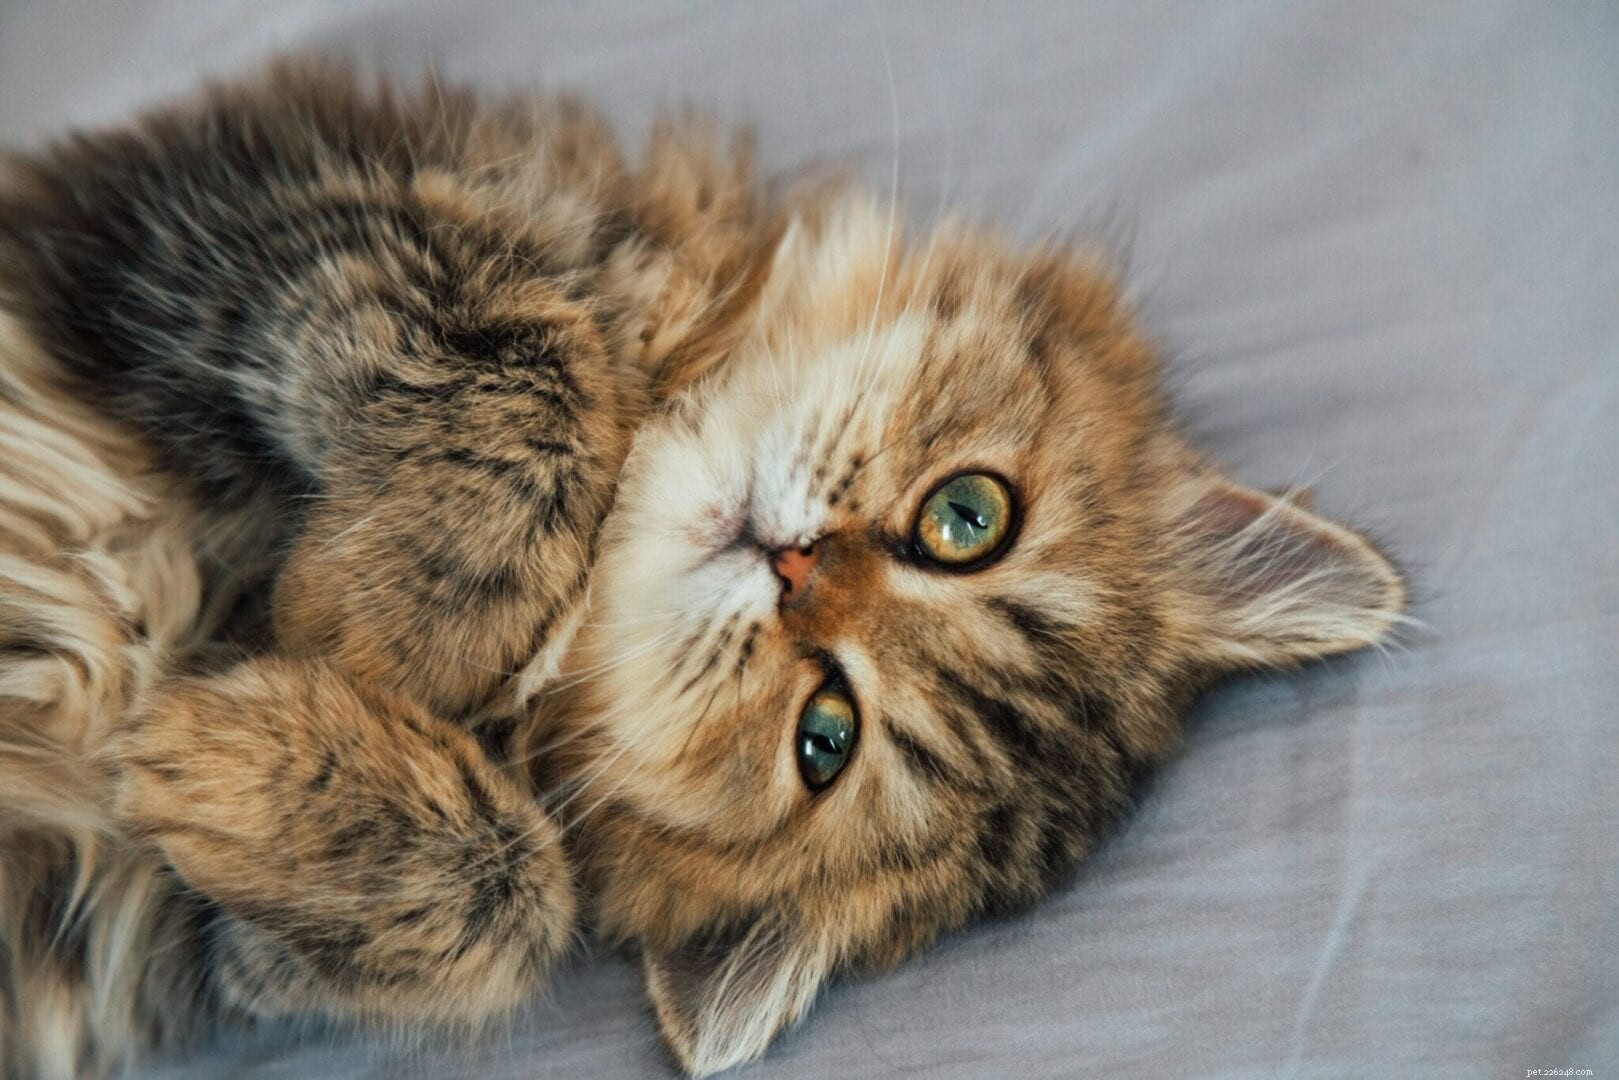 Perché i gatti amano attaccarti sotto le coperte?